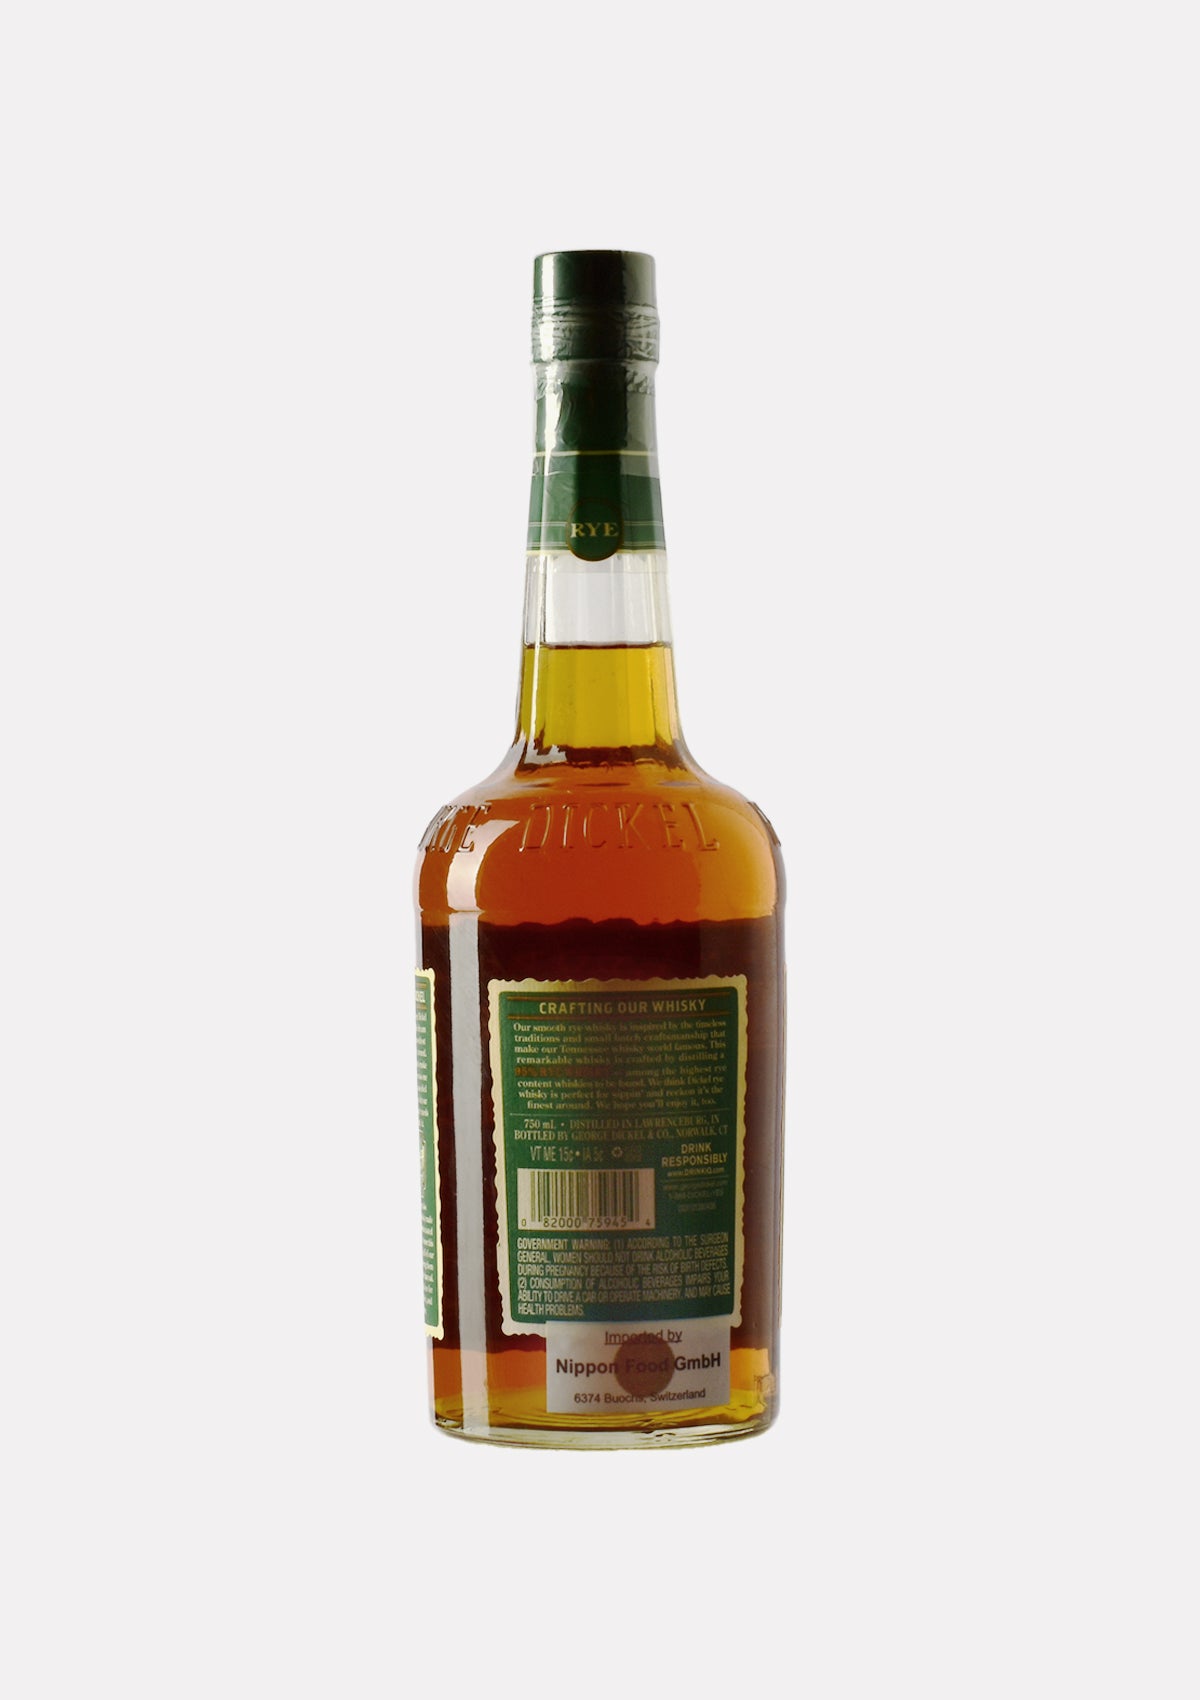 George Dickel Rye Whisky 90 Proof